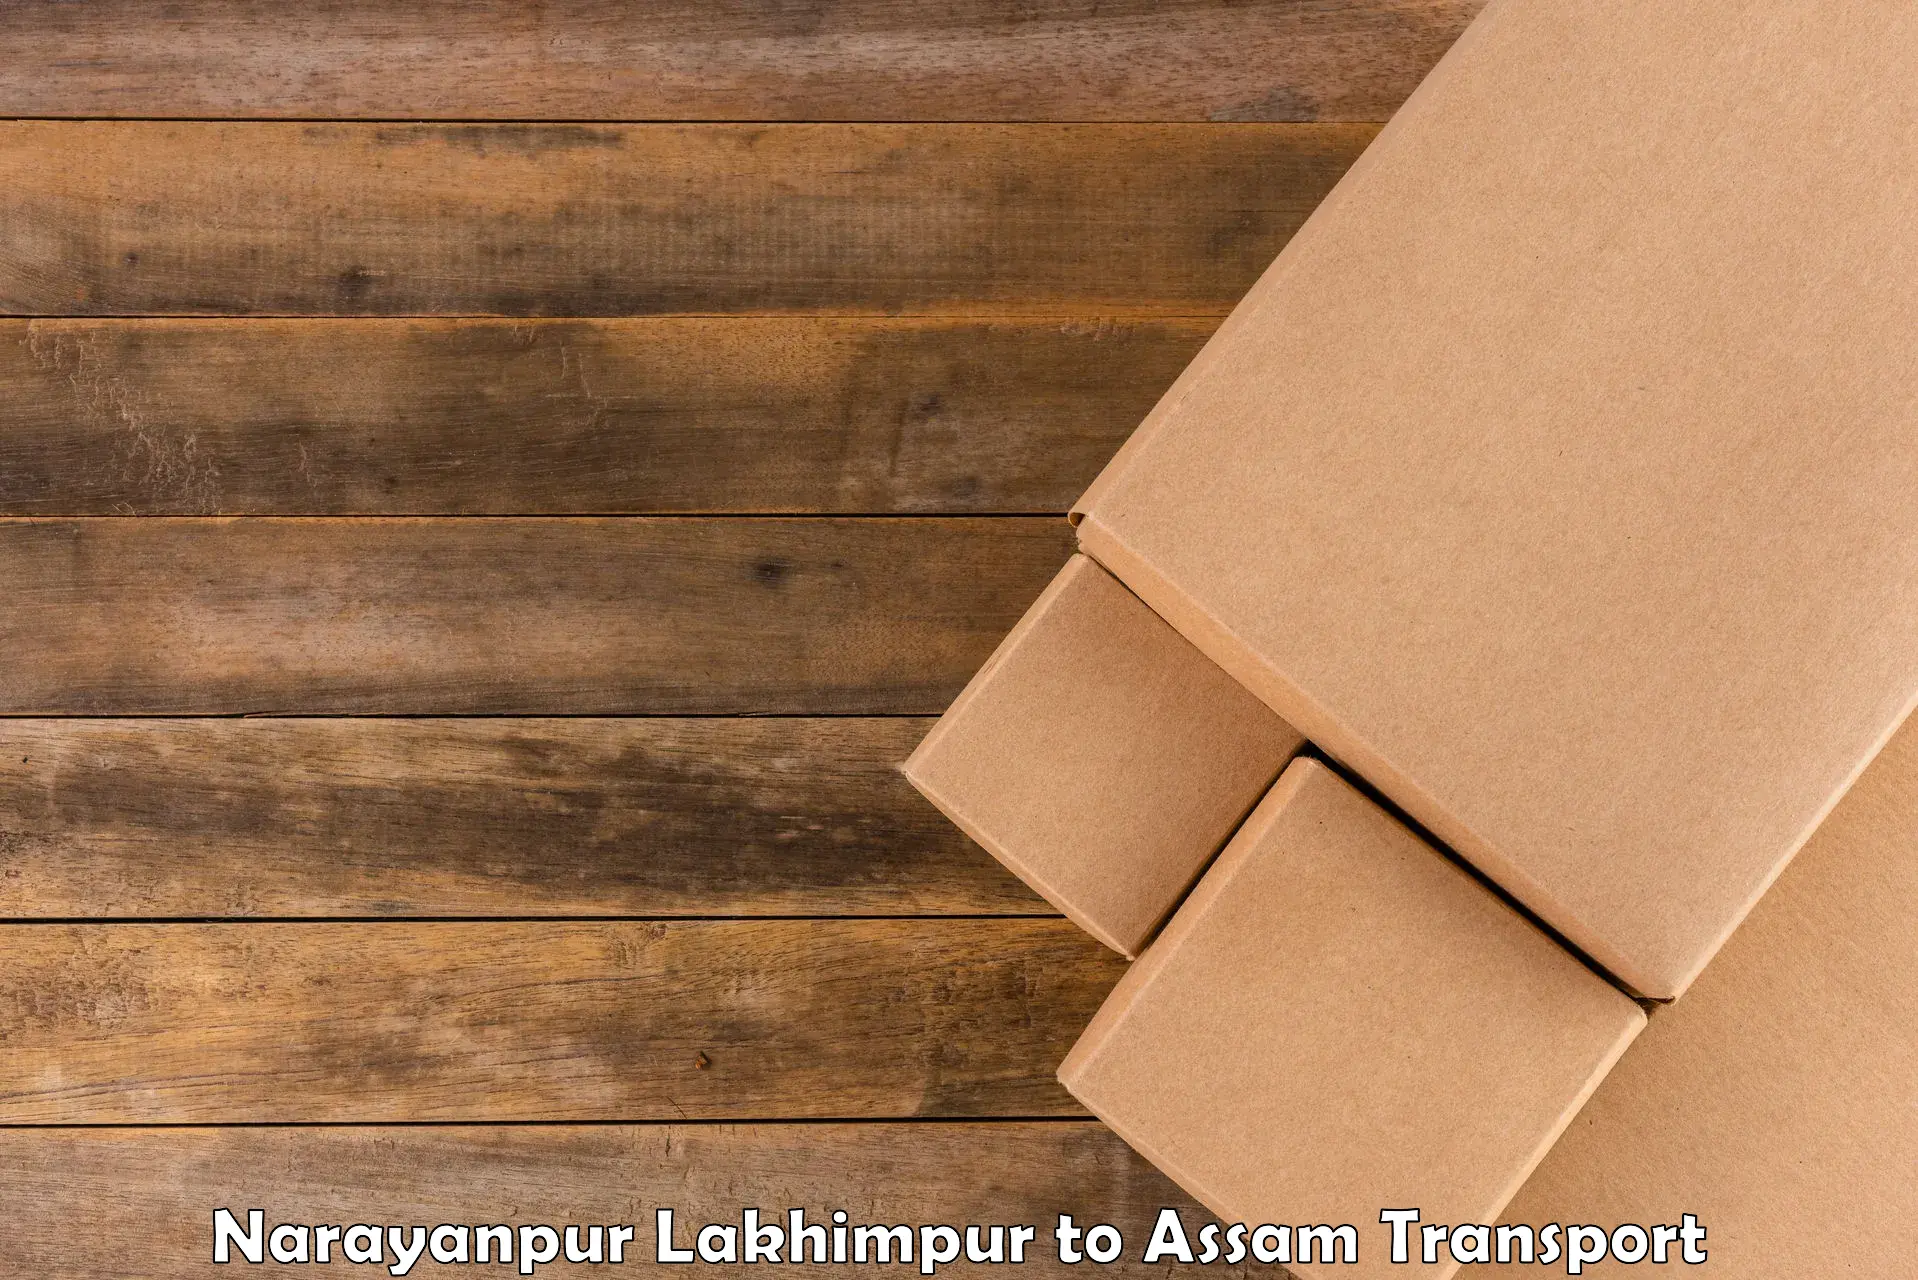 Lorry transport service Narayanpur Lakhimpur to Kalain